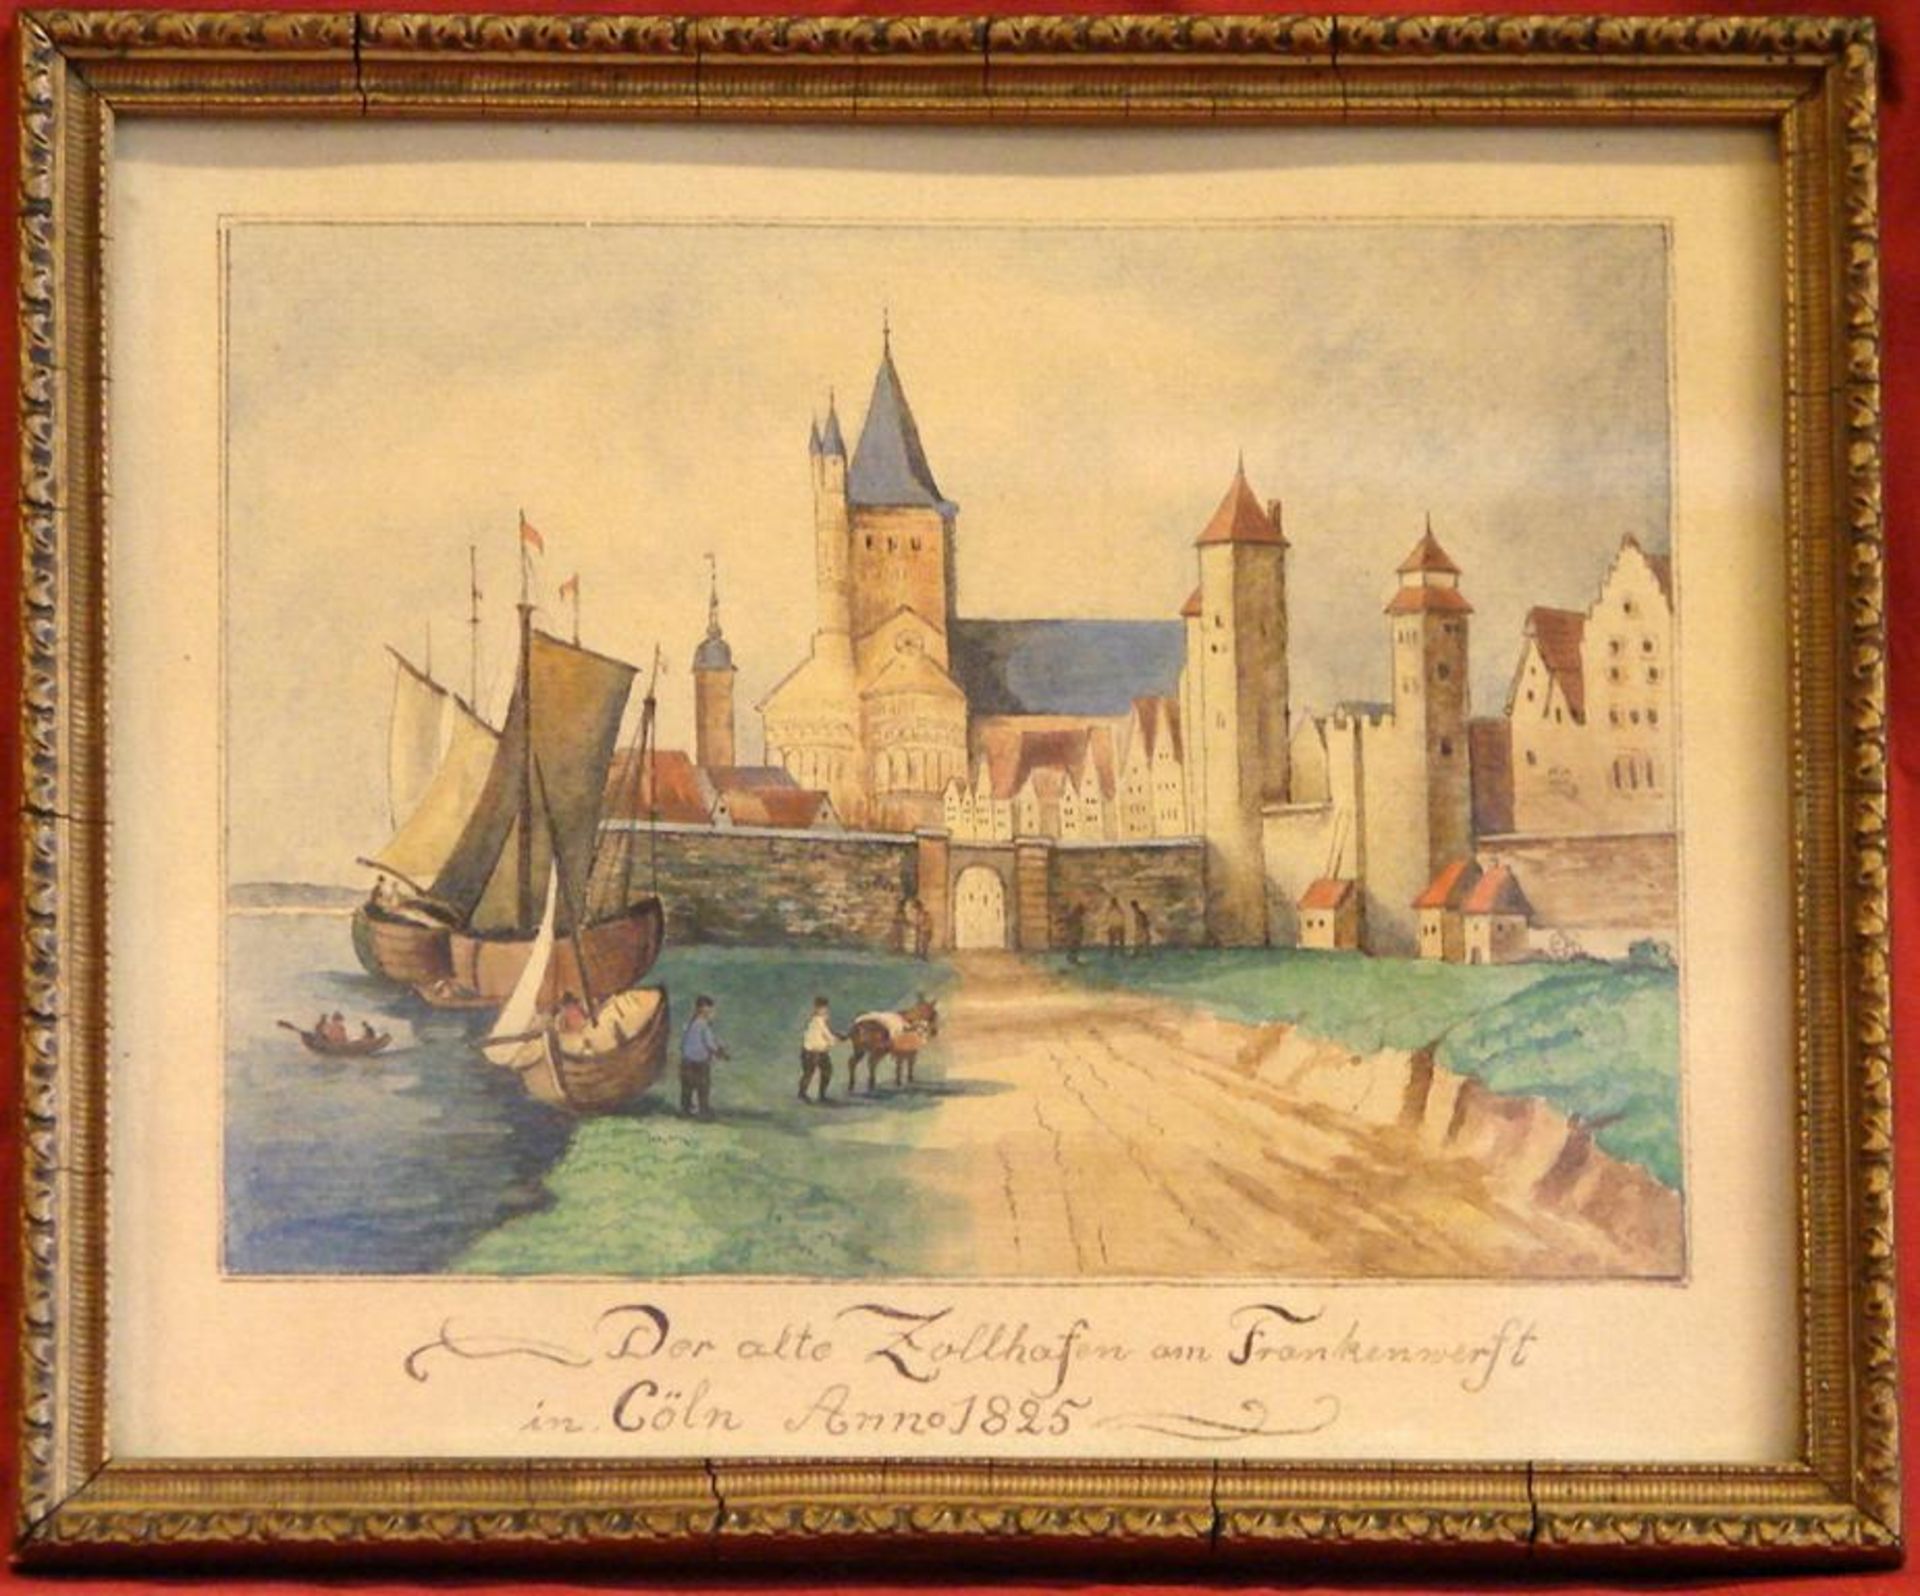 "Der alte Zollhafen am Frankenwerft in Cöln, Anno 1825", Aquarell, u. bez. Ca. 16 x 21 cm